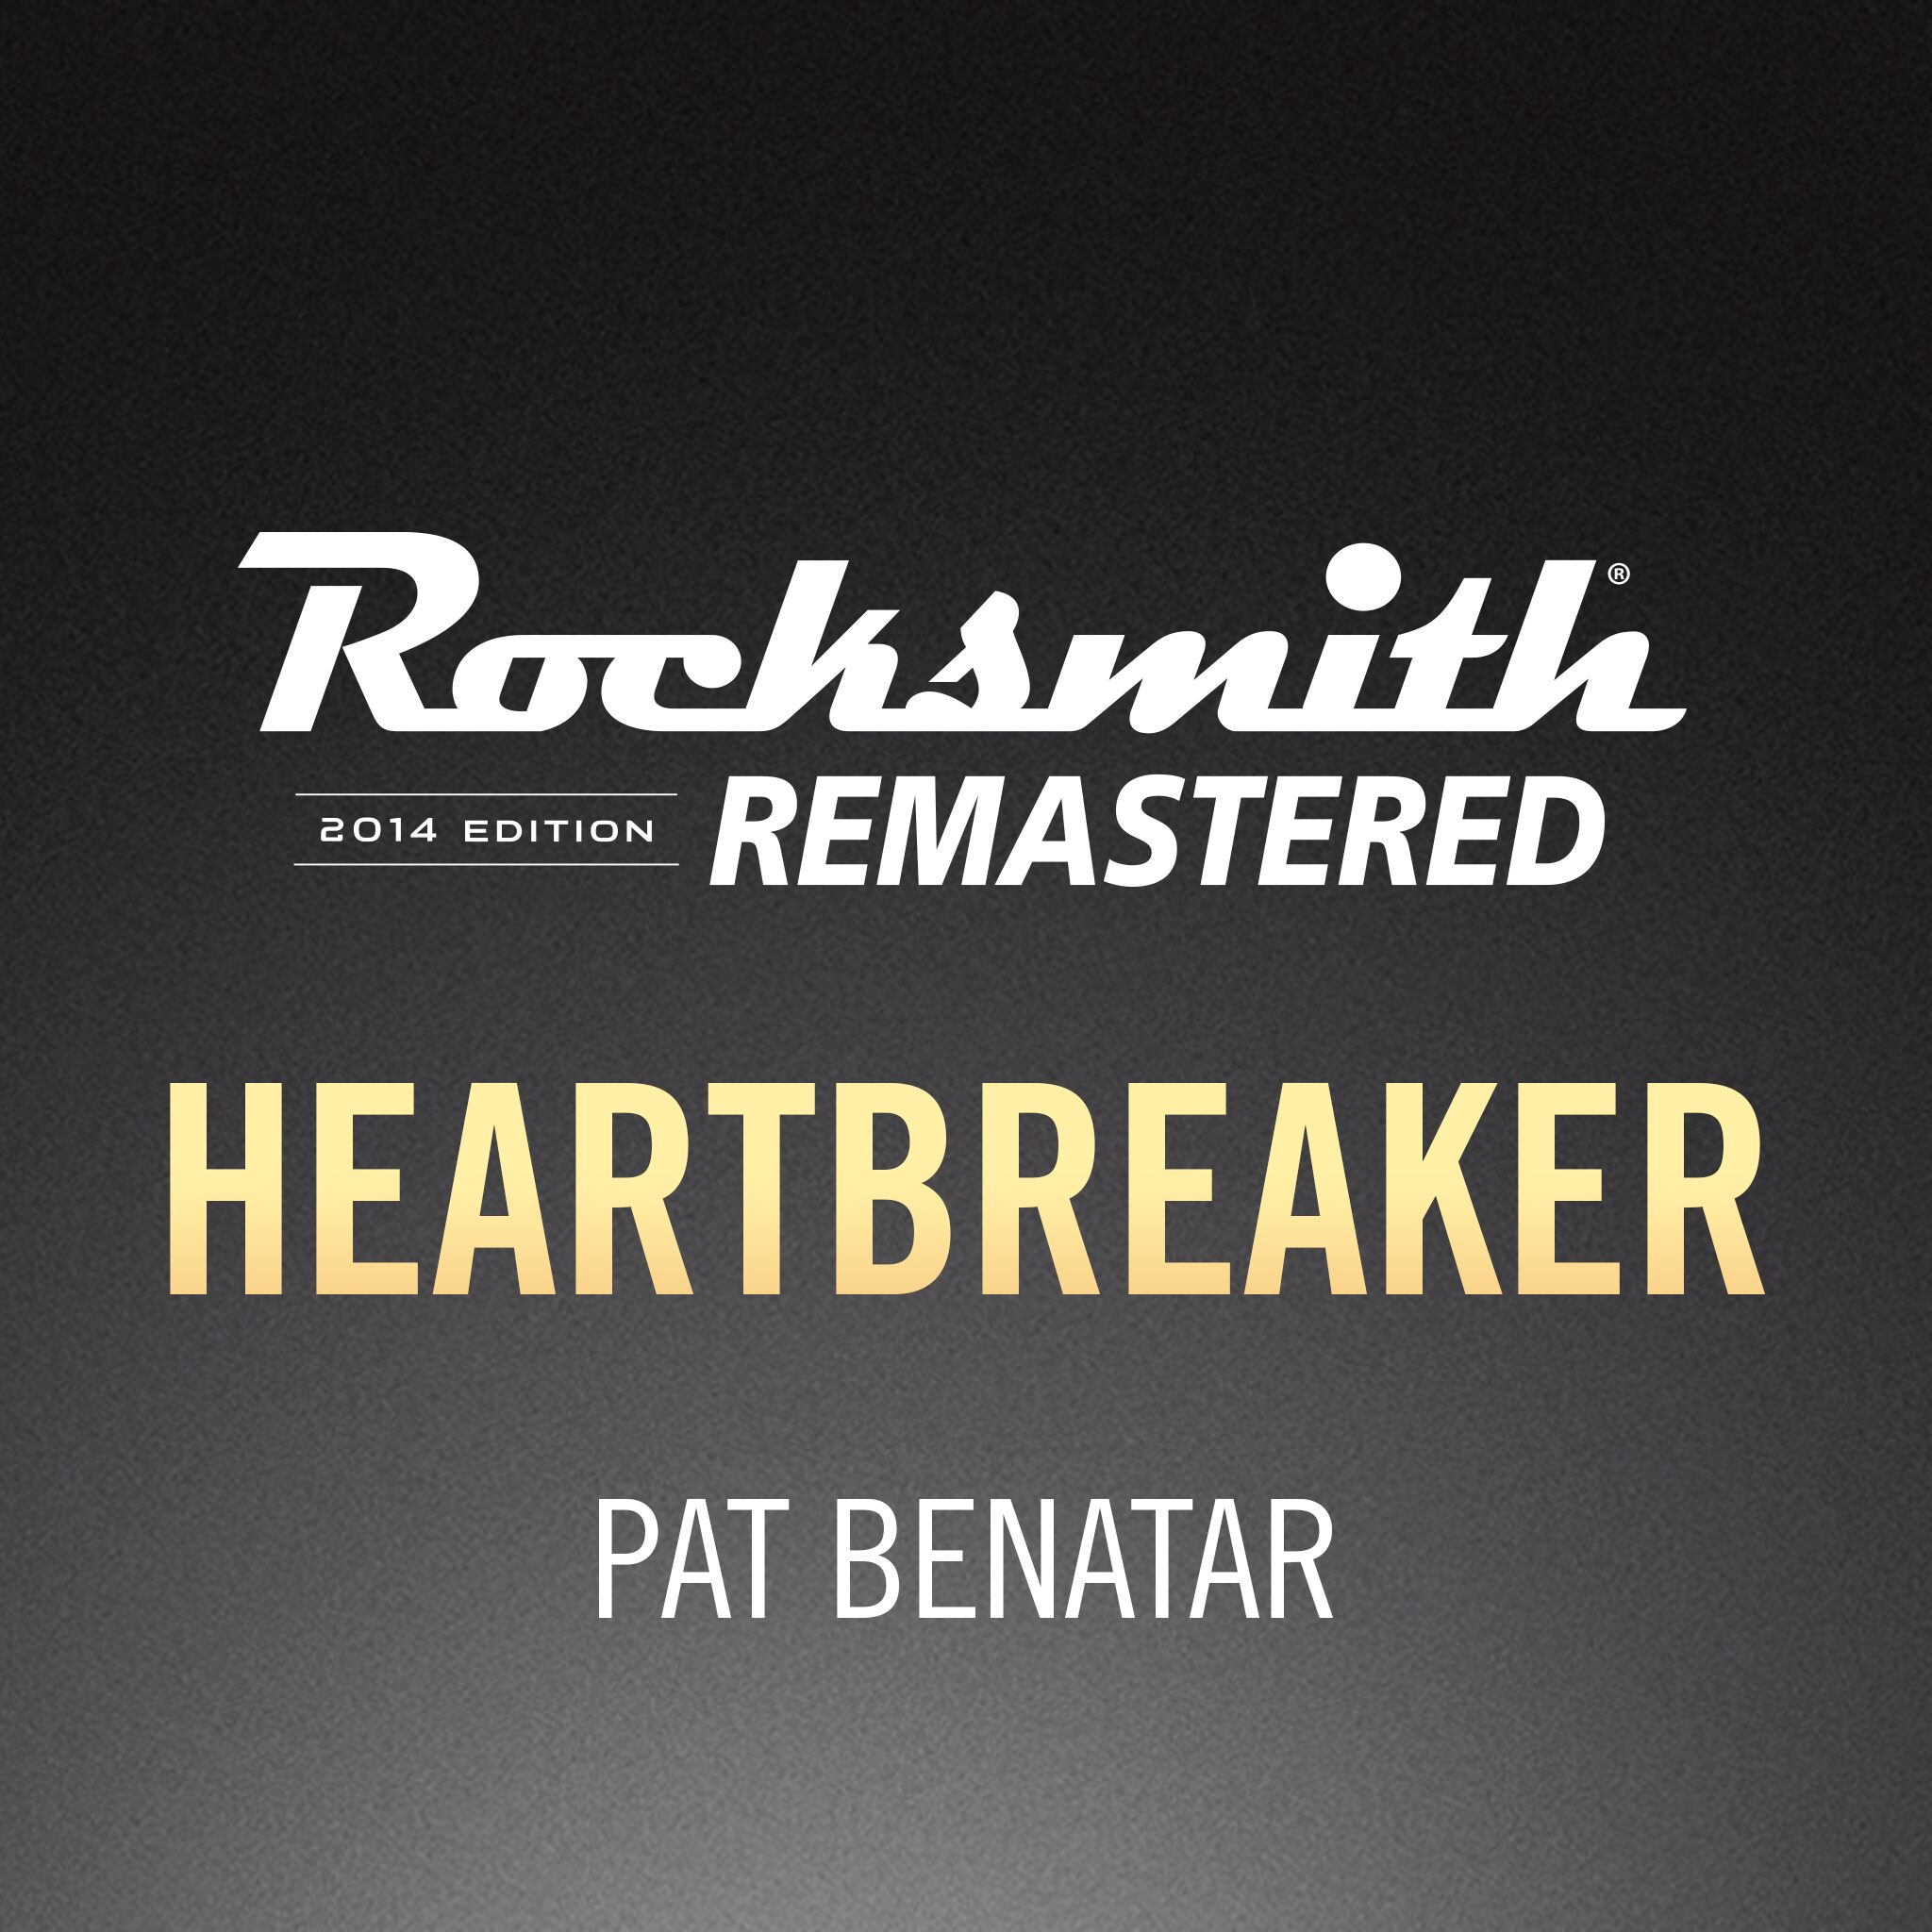 Heartbreaker (Pat Benatar Song).